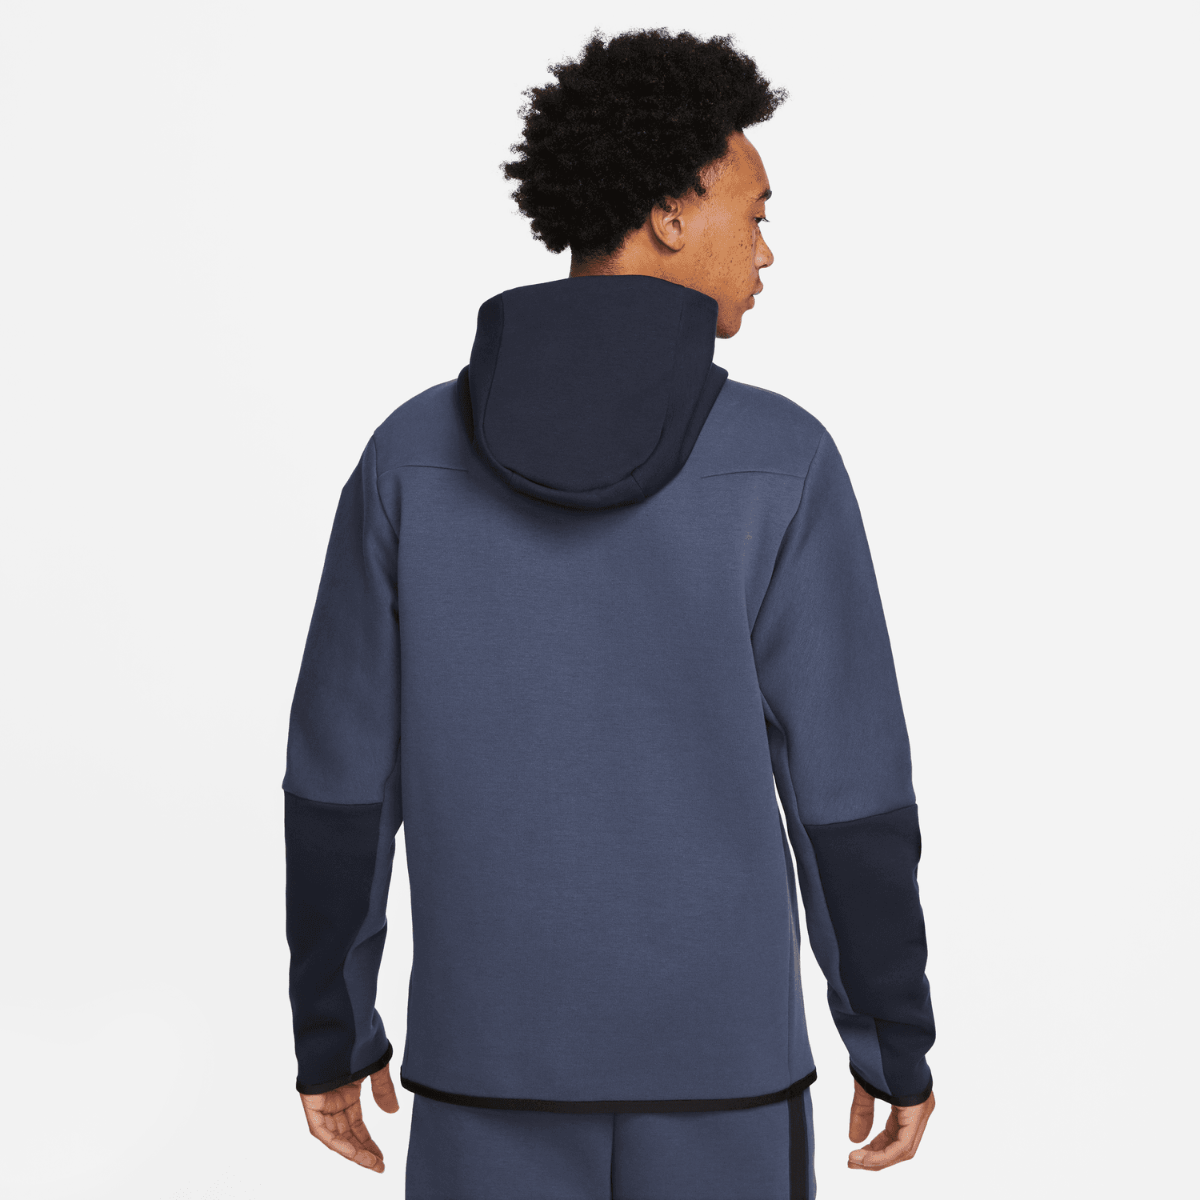 Nike Tech Fleece Hoody - Blue/Black